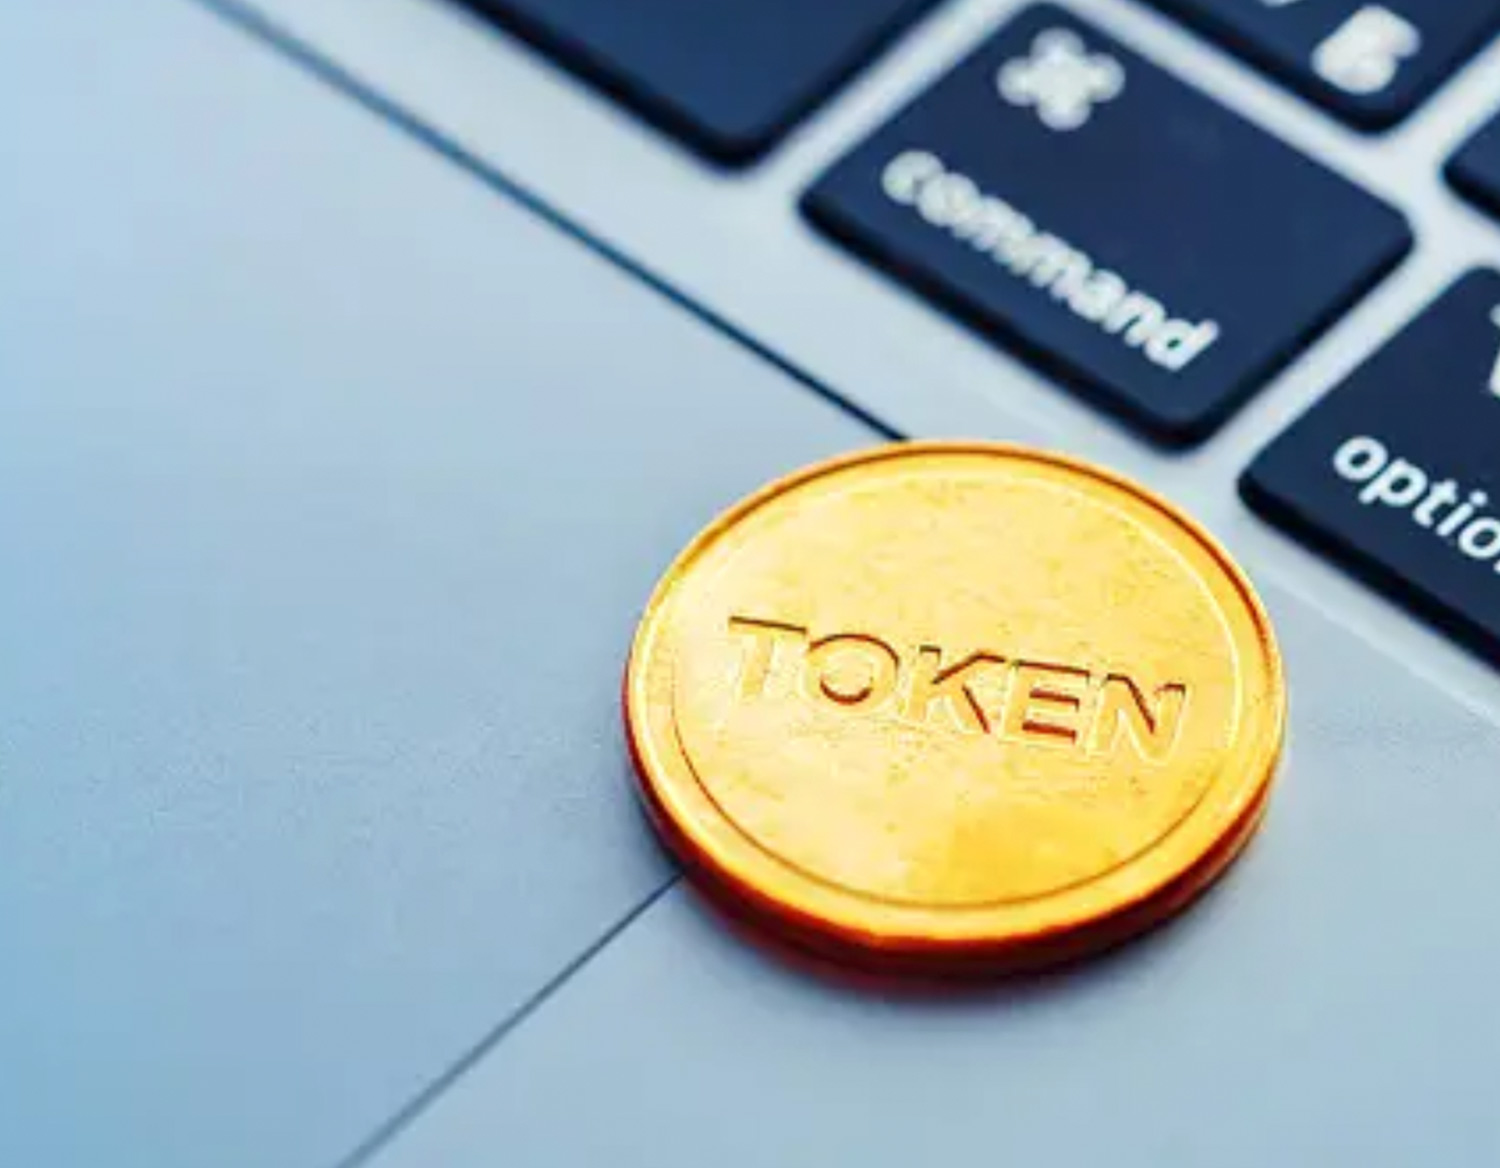 close view of a gold "token" an a laptop keyboard